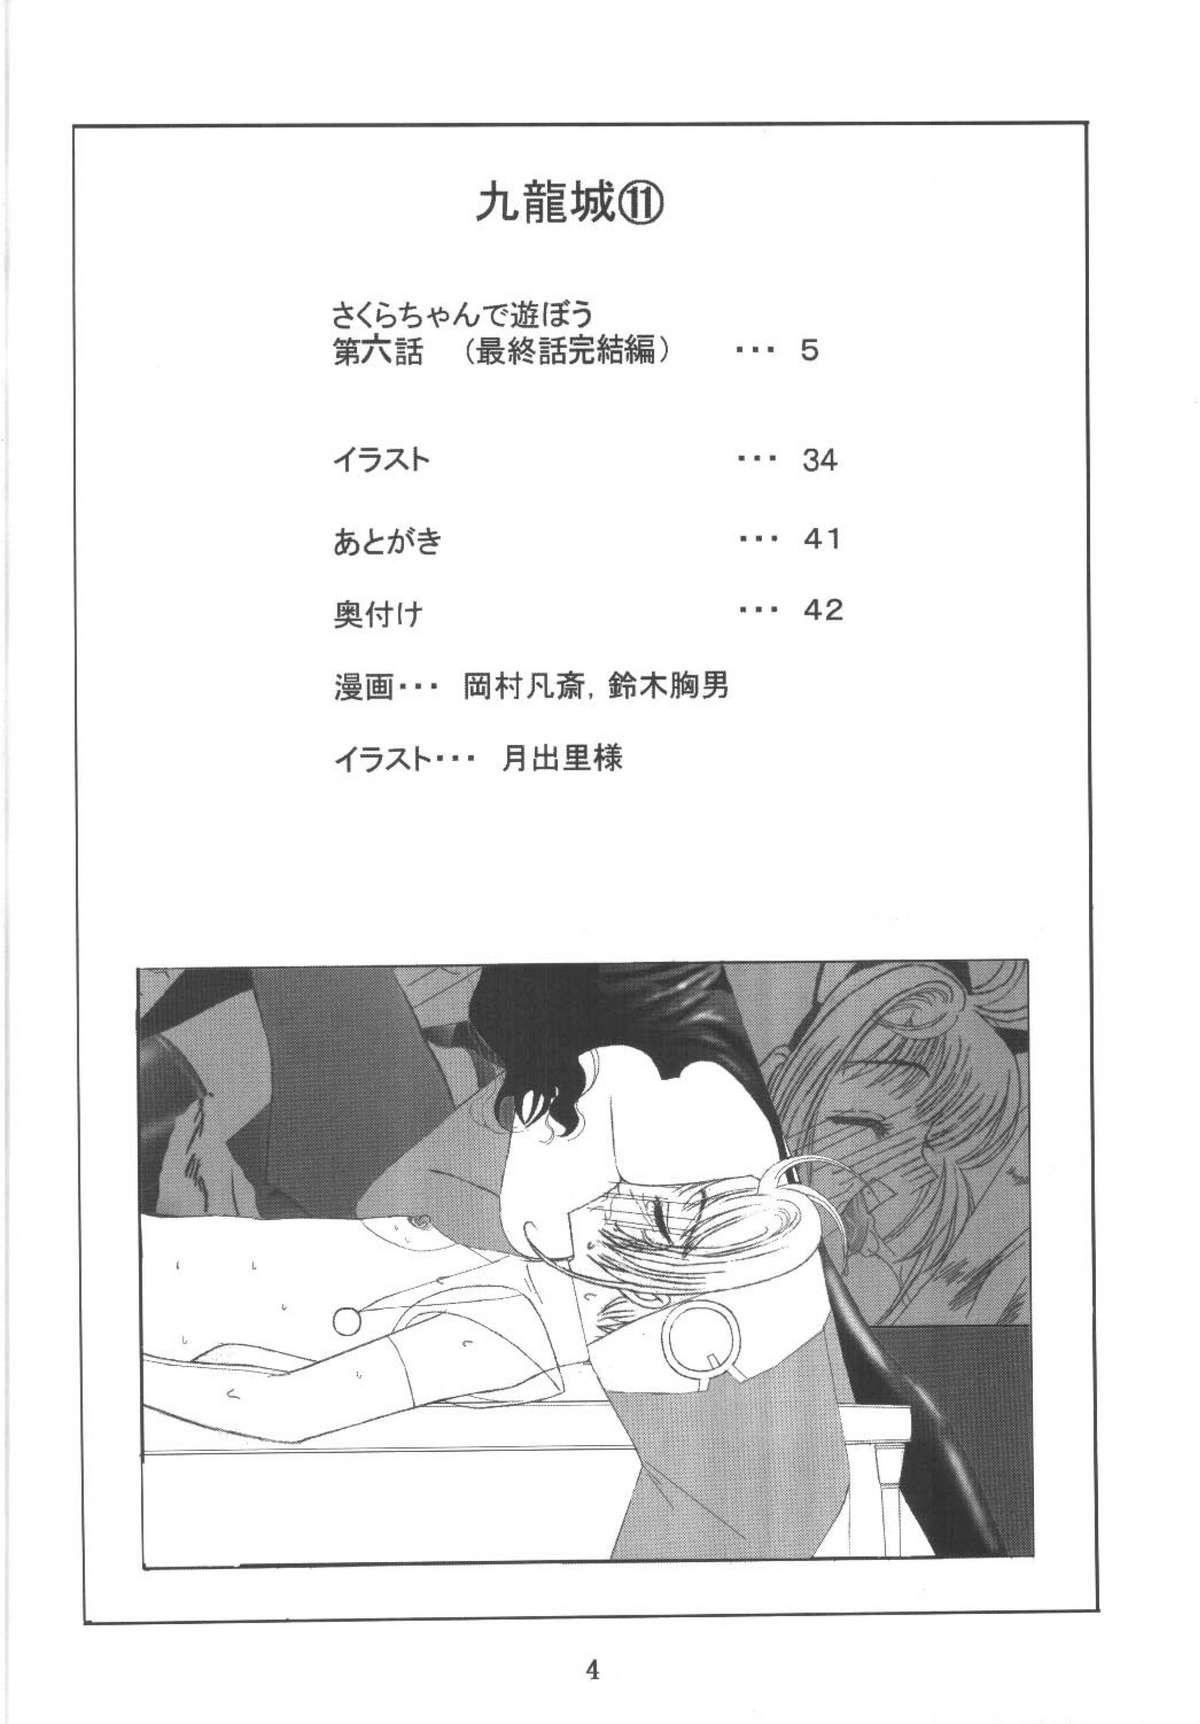 Missionary Position Porn Kuuronziyou 11 Sakura-chan de Asobou 6 - Cardcaptor sakura Bailando - Page 4